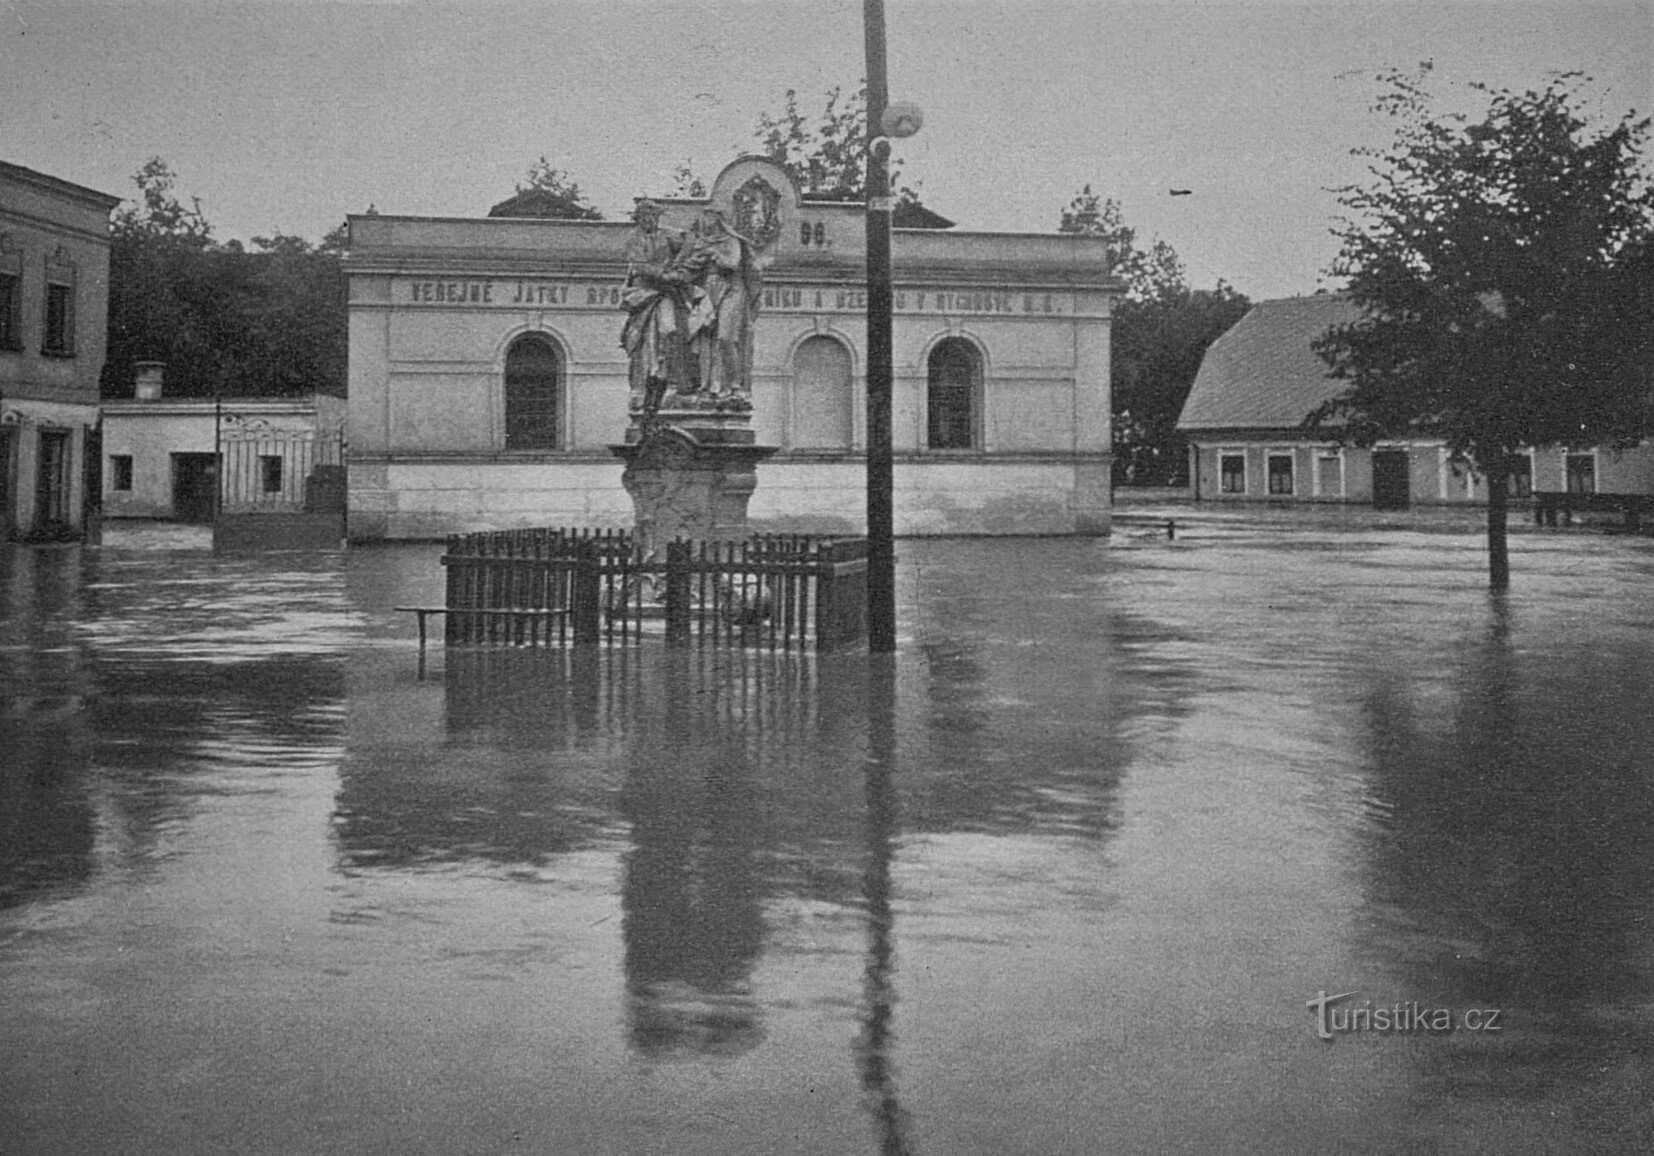 Затопленный Рыхнов-над-Кнежной (1907 г.)